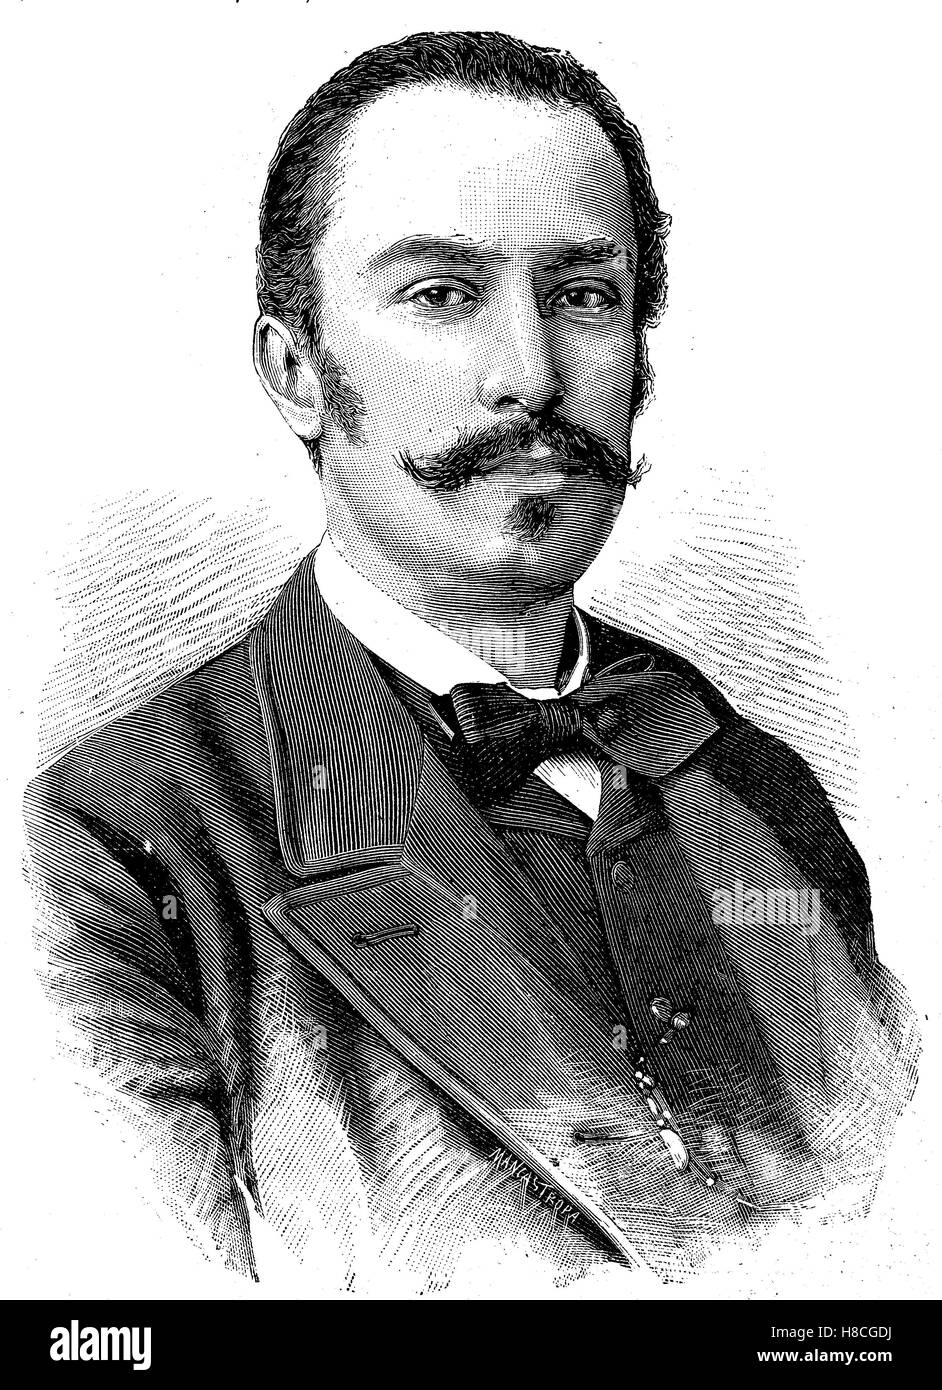 Giovanni Giolitti; Ottobre 27, 1842 - 17 luglio 1928, era un statista italiano. Egli è stato il primo ministro di Italia 5 volte tra il 1892 e il 1921, la xilografia dal 1892 Foto Stock